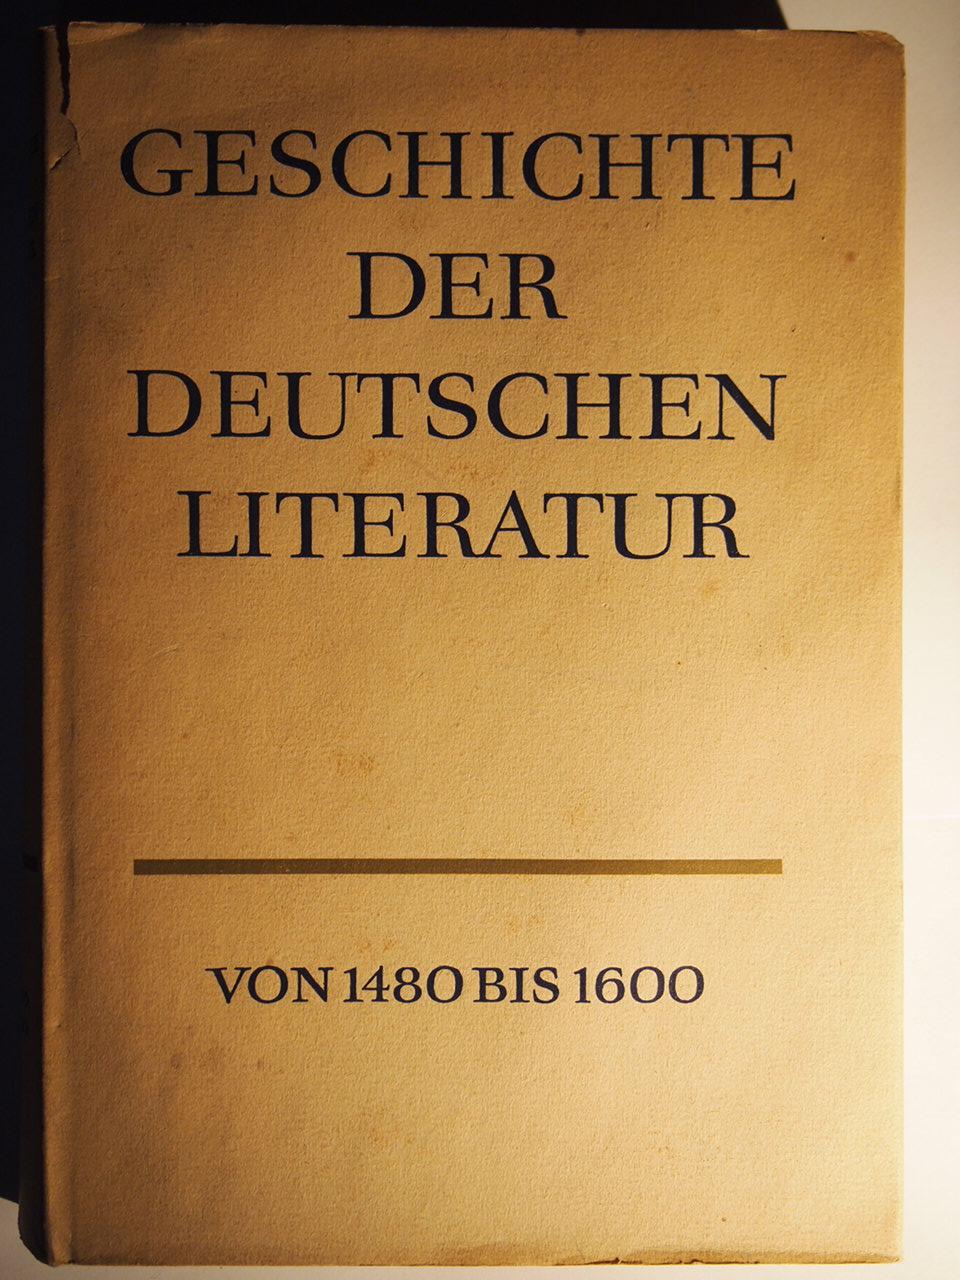 Geschichte der Deutschen Literatur von 1480 bis 1600,